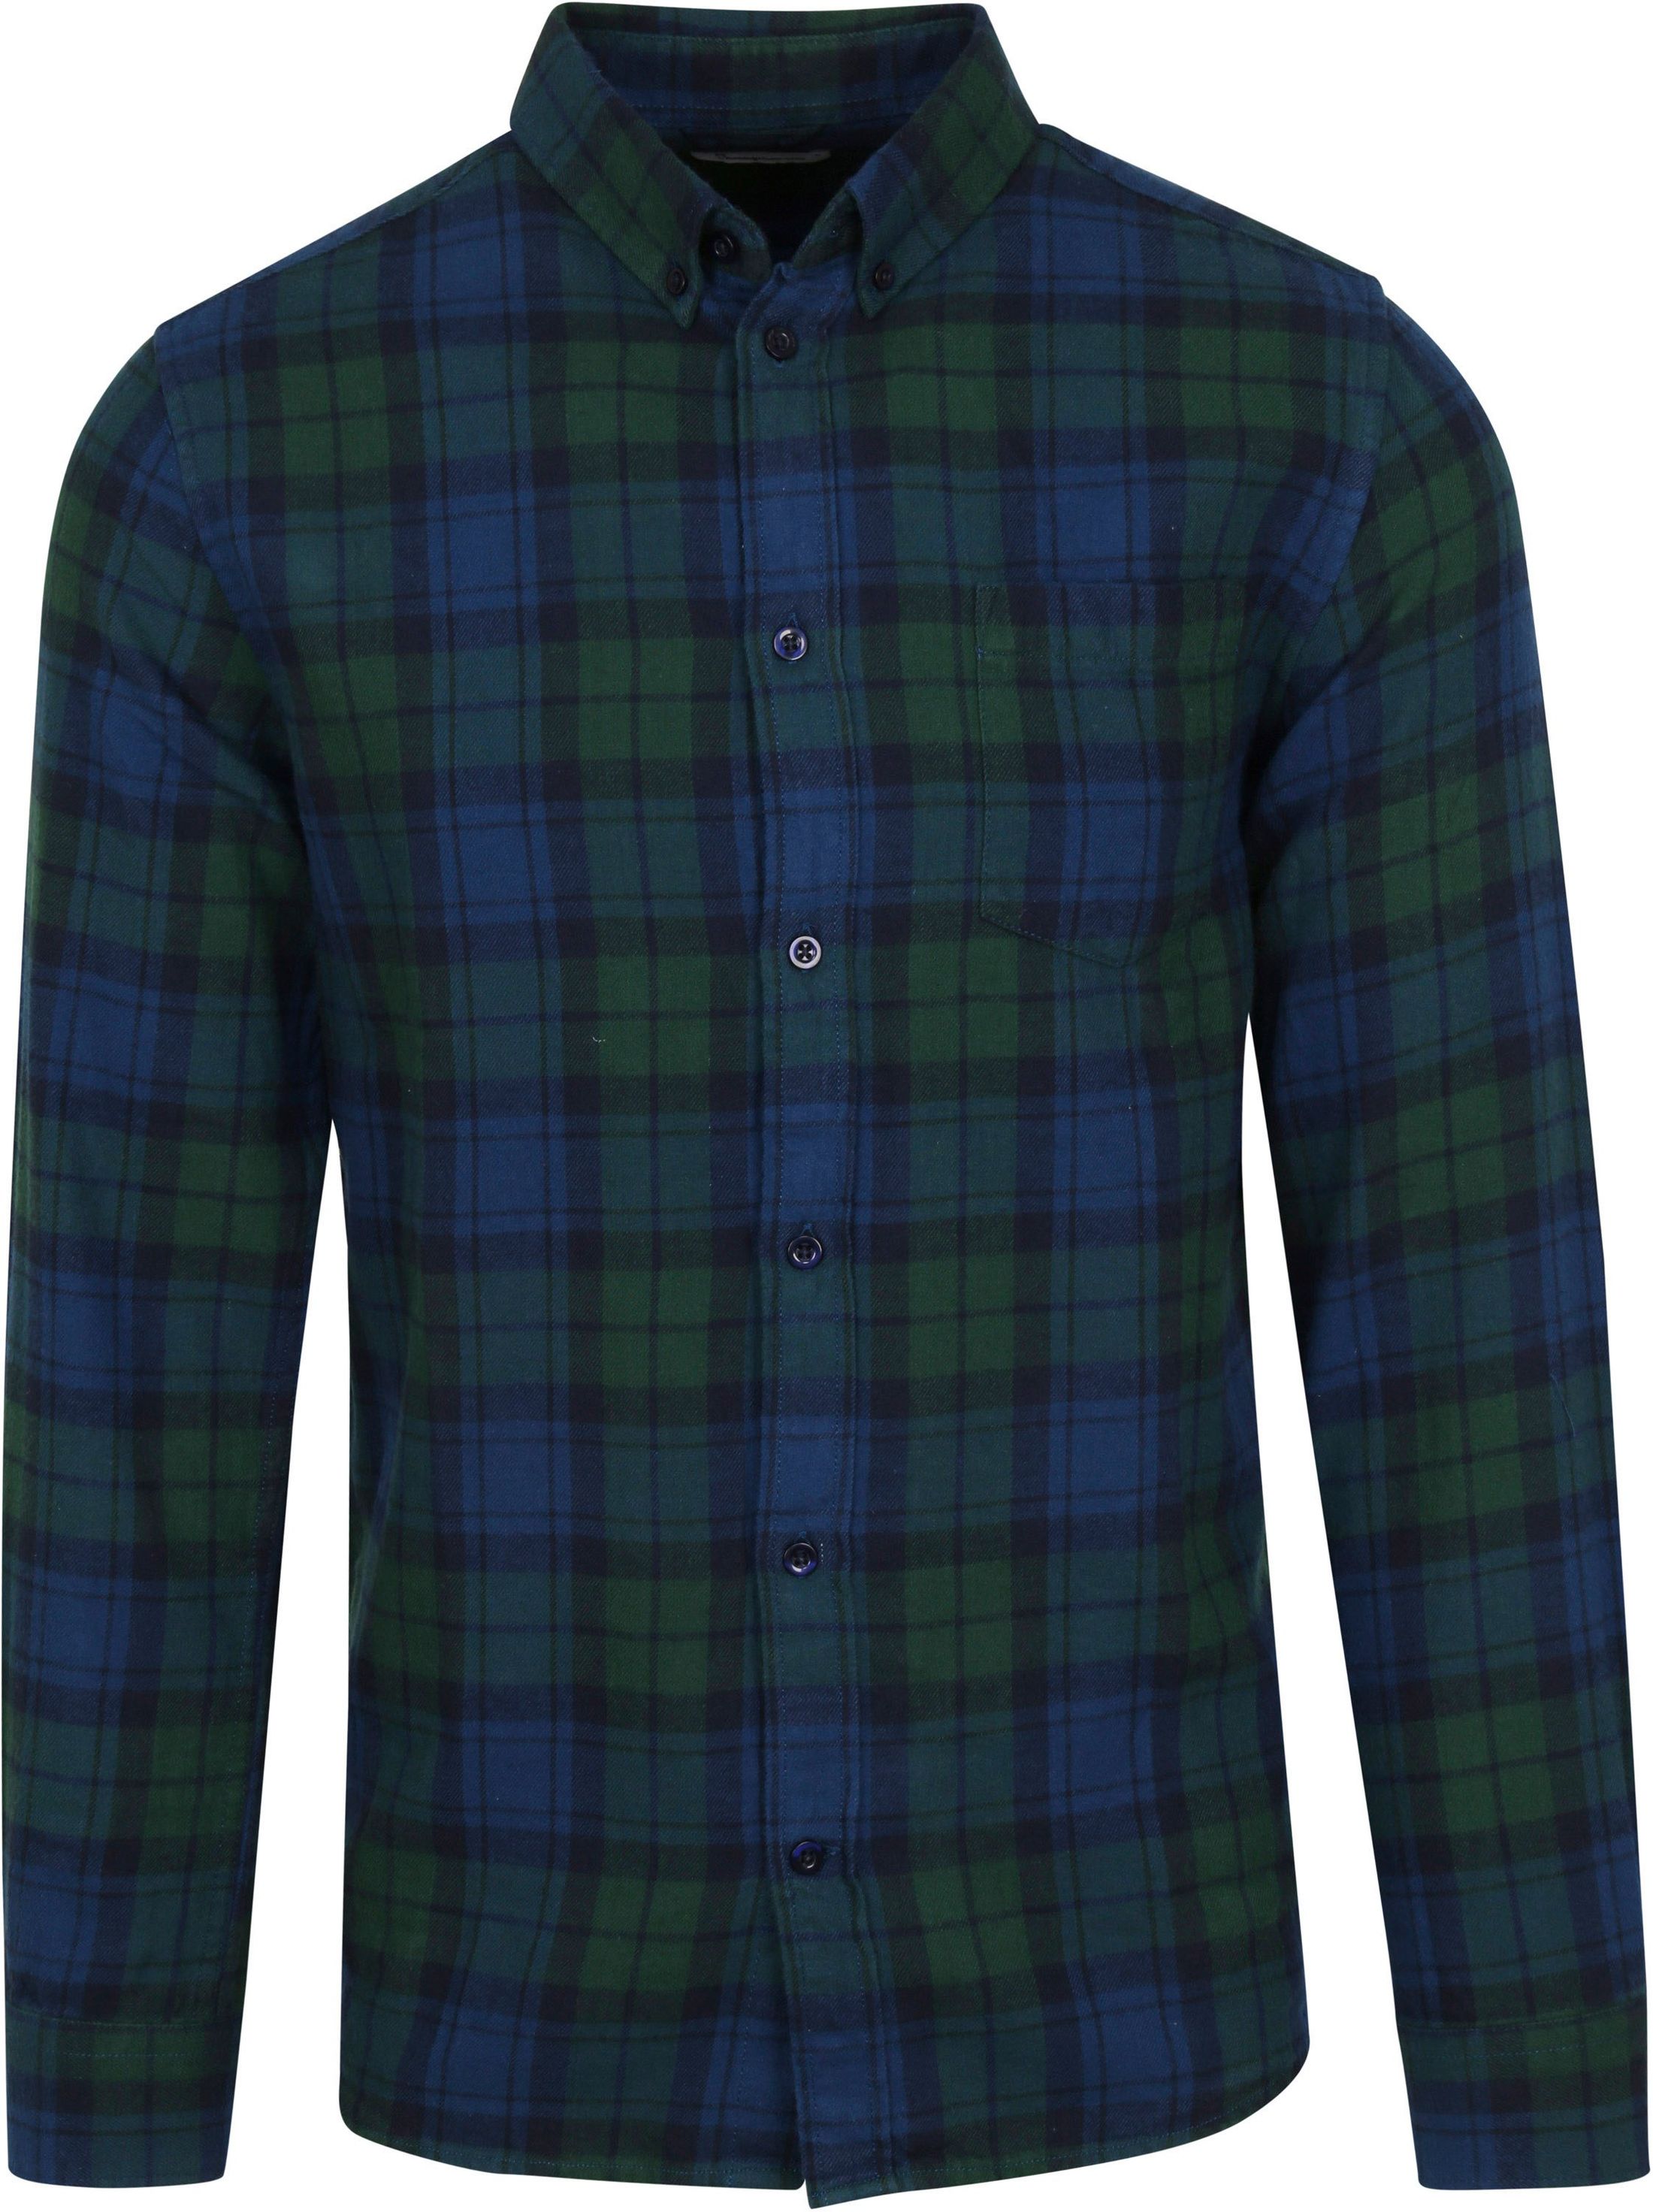 KnowledgeCotton Apparel Flannel Shirt Checkered Dark Dark Green Green size L